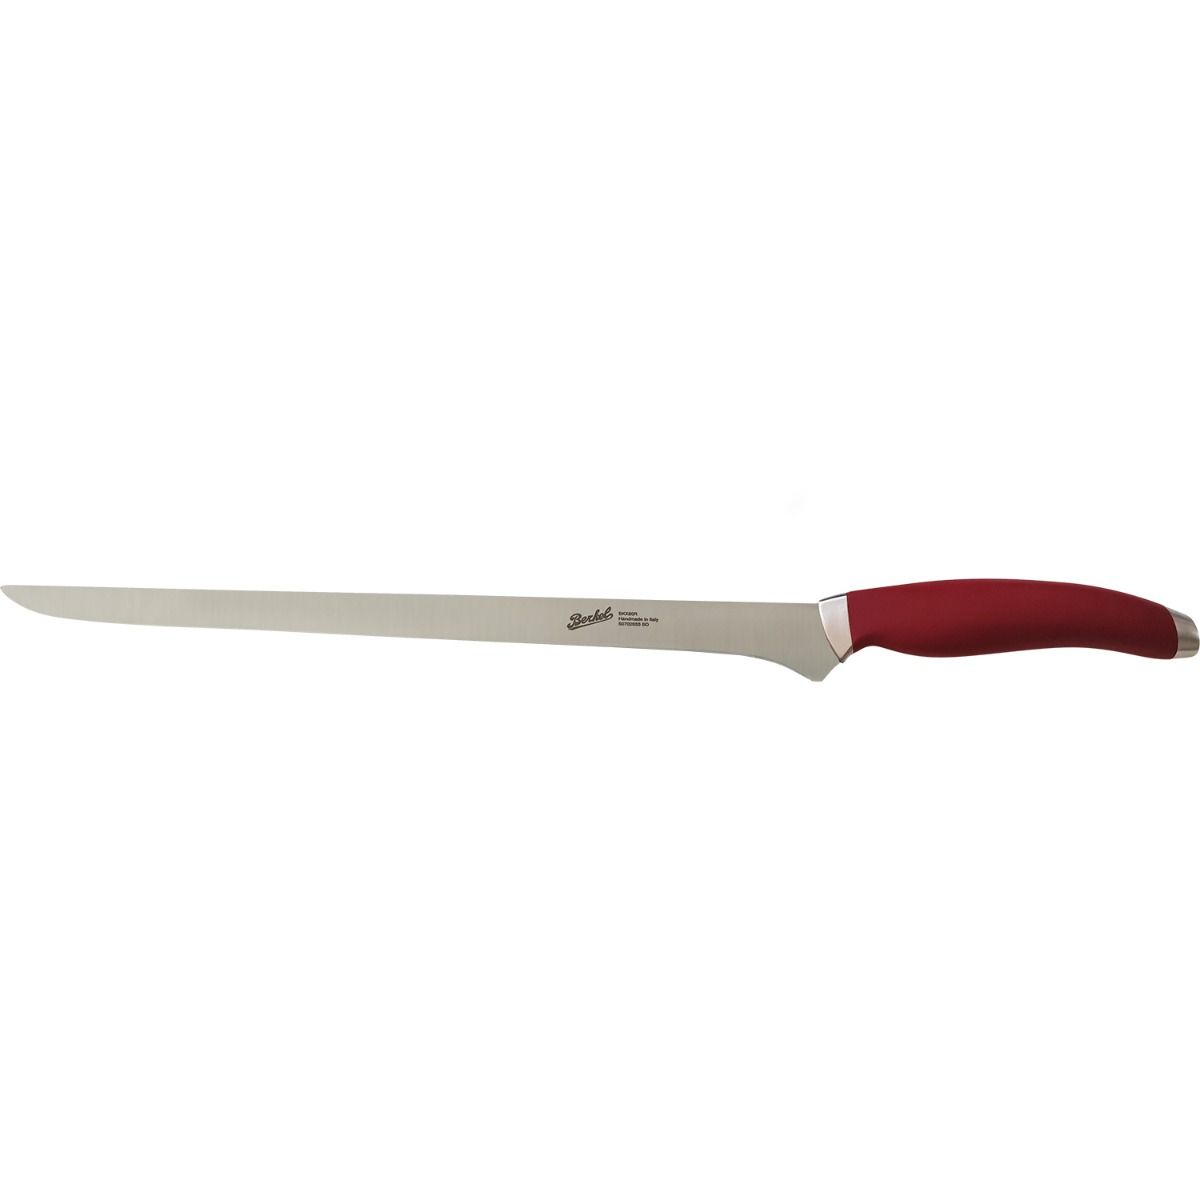 Ham Knife 28 cm  Stainless Steel Berkel Teknica Handle Red Resin